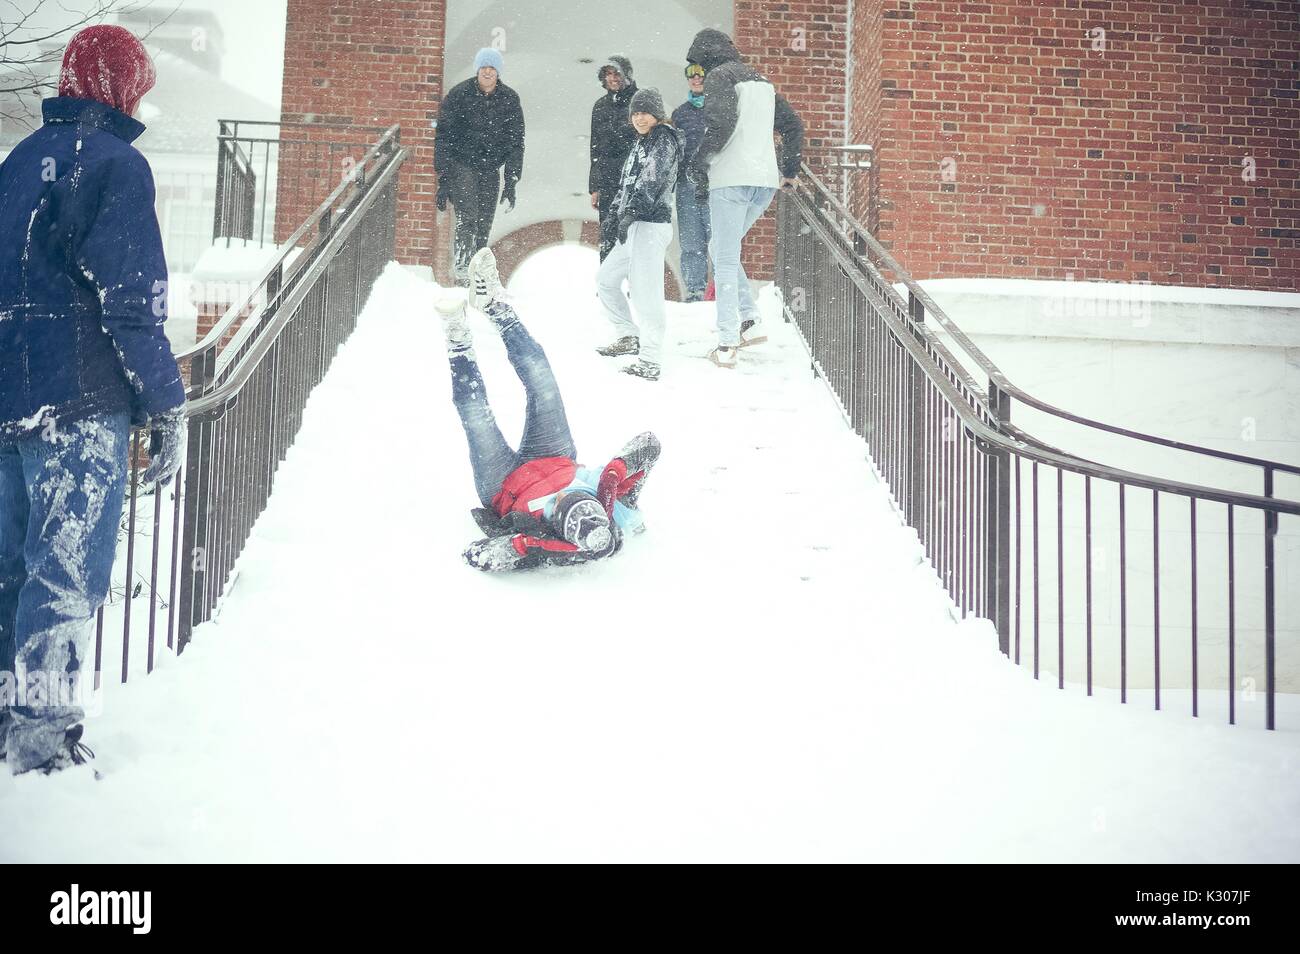 Un élève glisse vers le bas l'escalier enneigé avec les jambes dans l'air et les bras autour de la tête, tandis que les étudiants vêtus de rire et de neige sur l'encourager à partir du haut de l'escalier, au cours d'un jour de neige à la Johns Hopkins University, Baltimore, Maryland, 2016. Banque D'Images